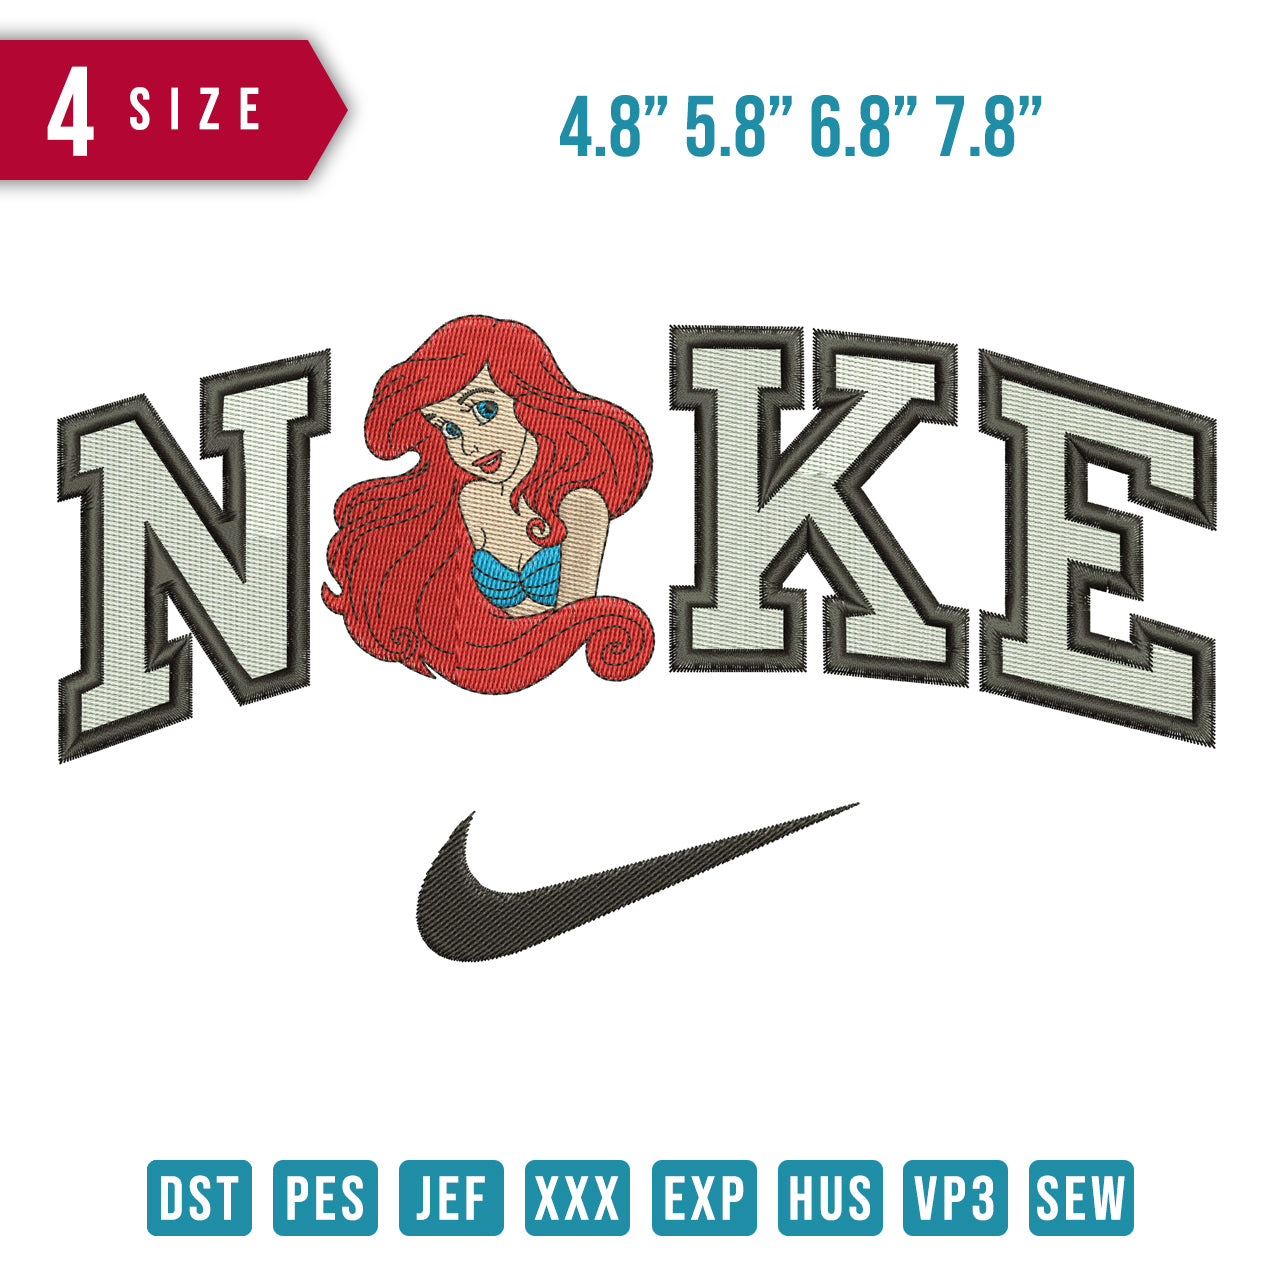 Nike Ariel mermaid